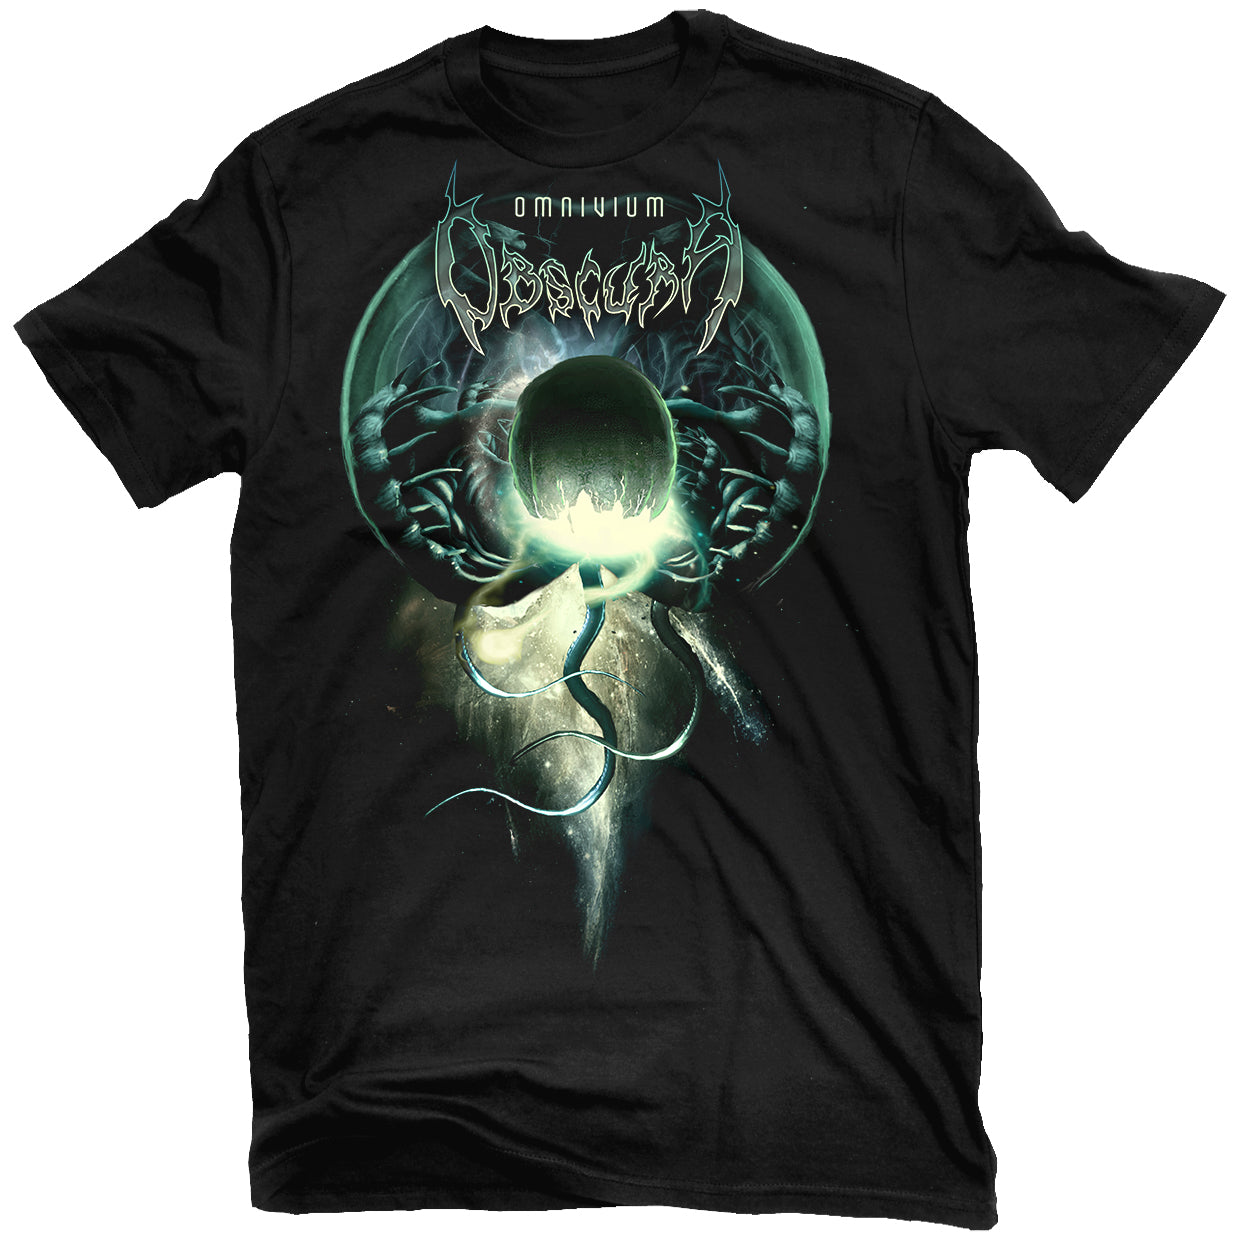 Obscura "Omnivium" T-Shirt